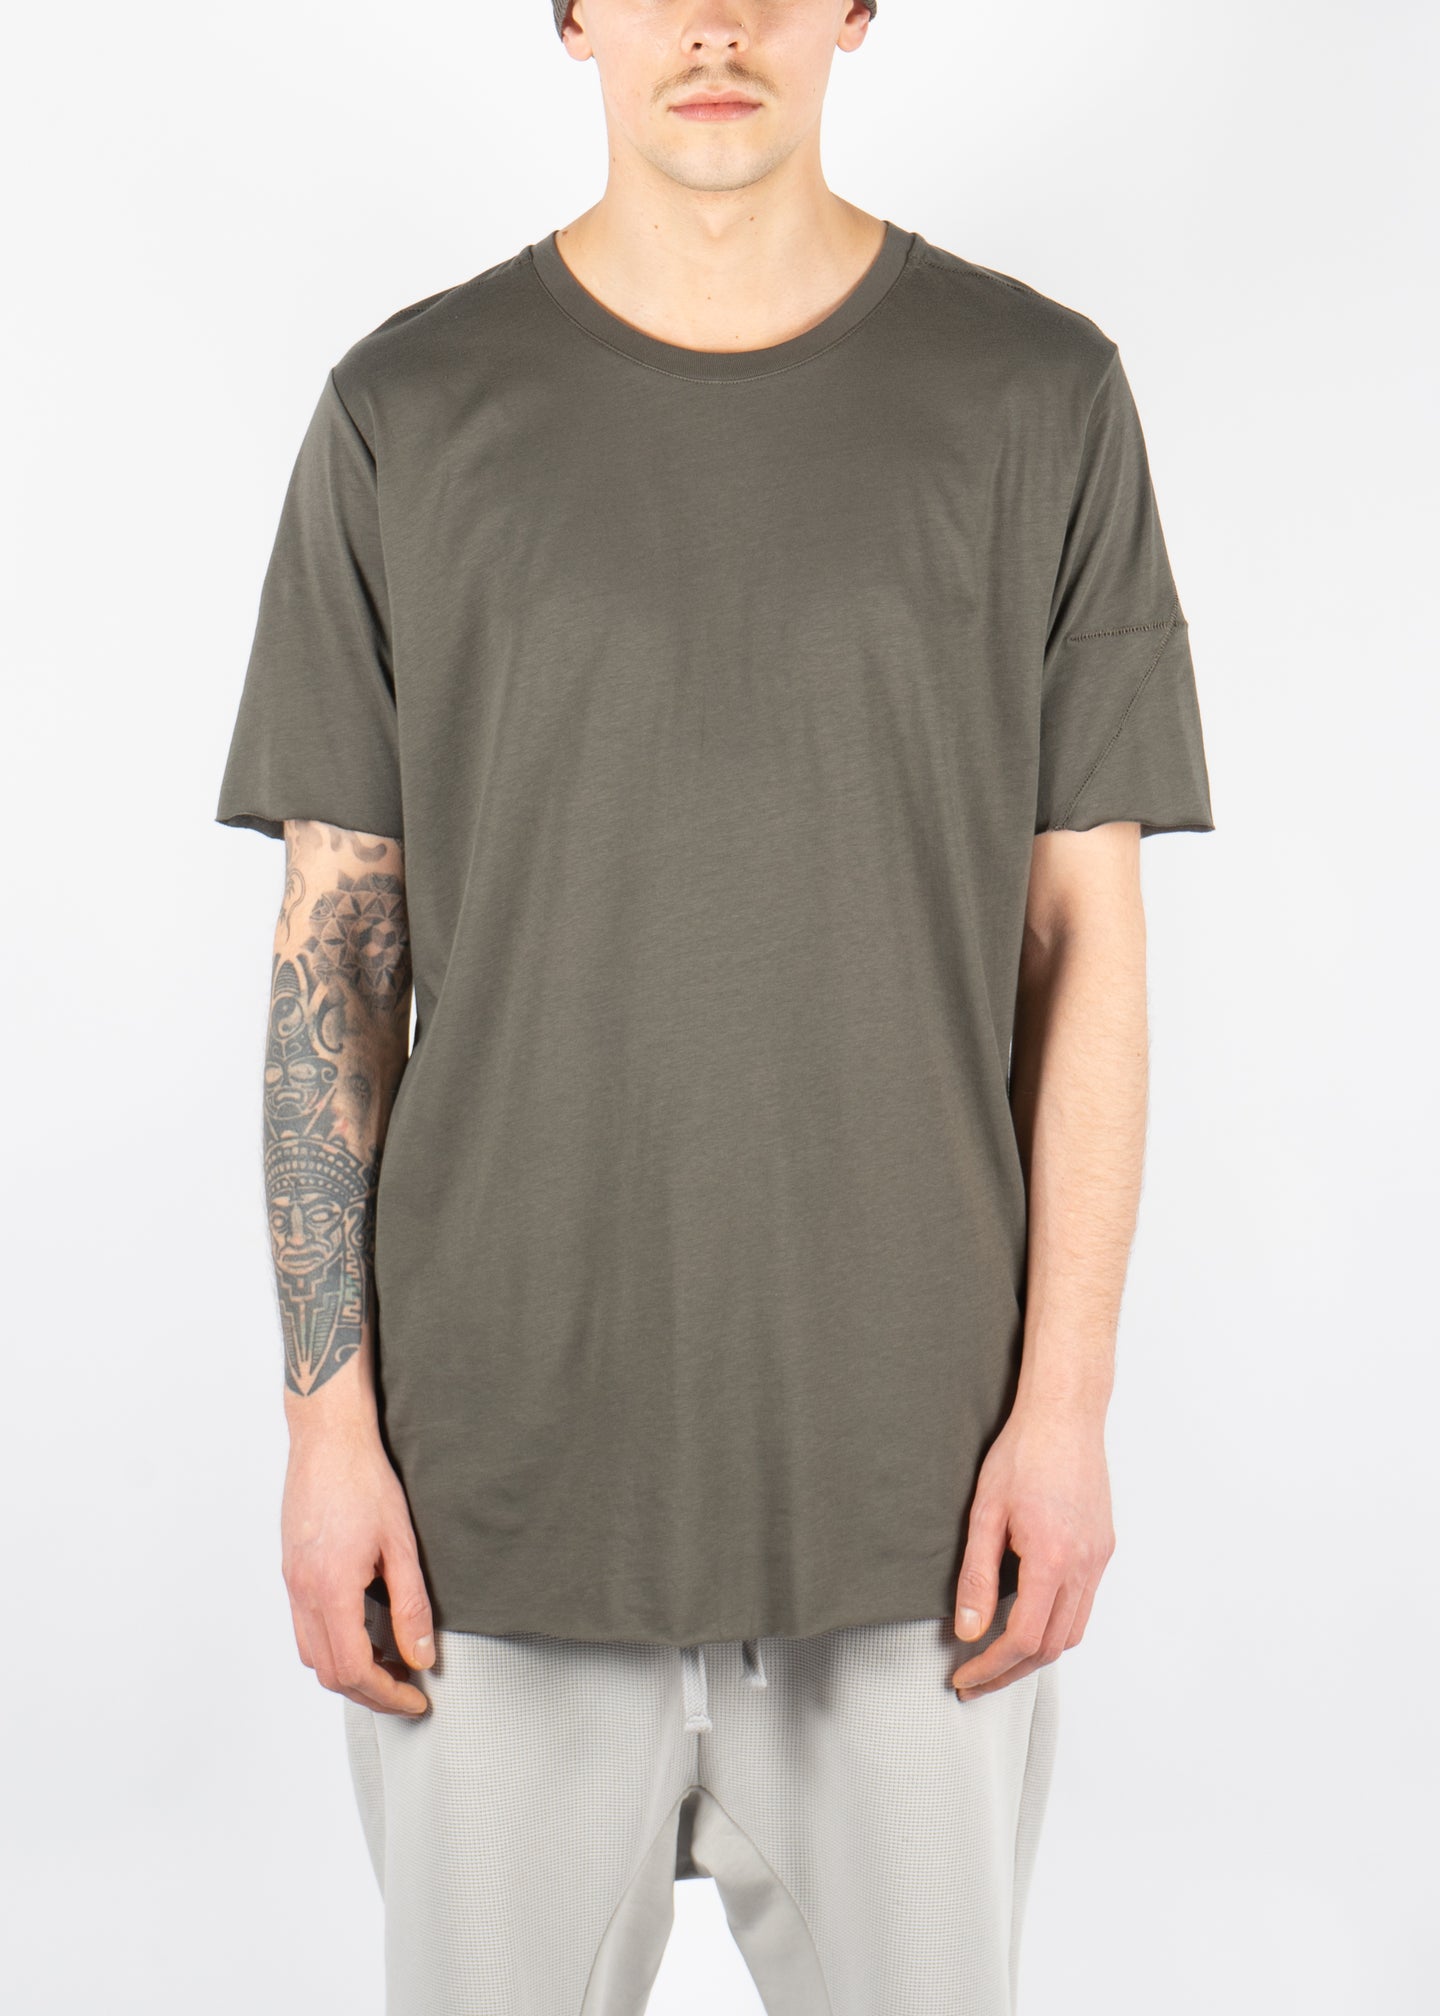 M TS 784 T-Shirt Ivy Green